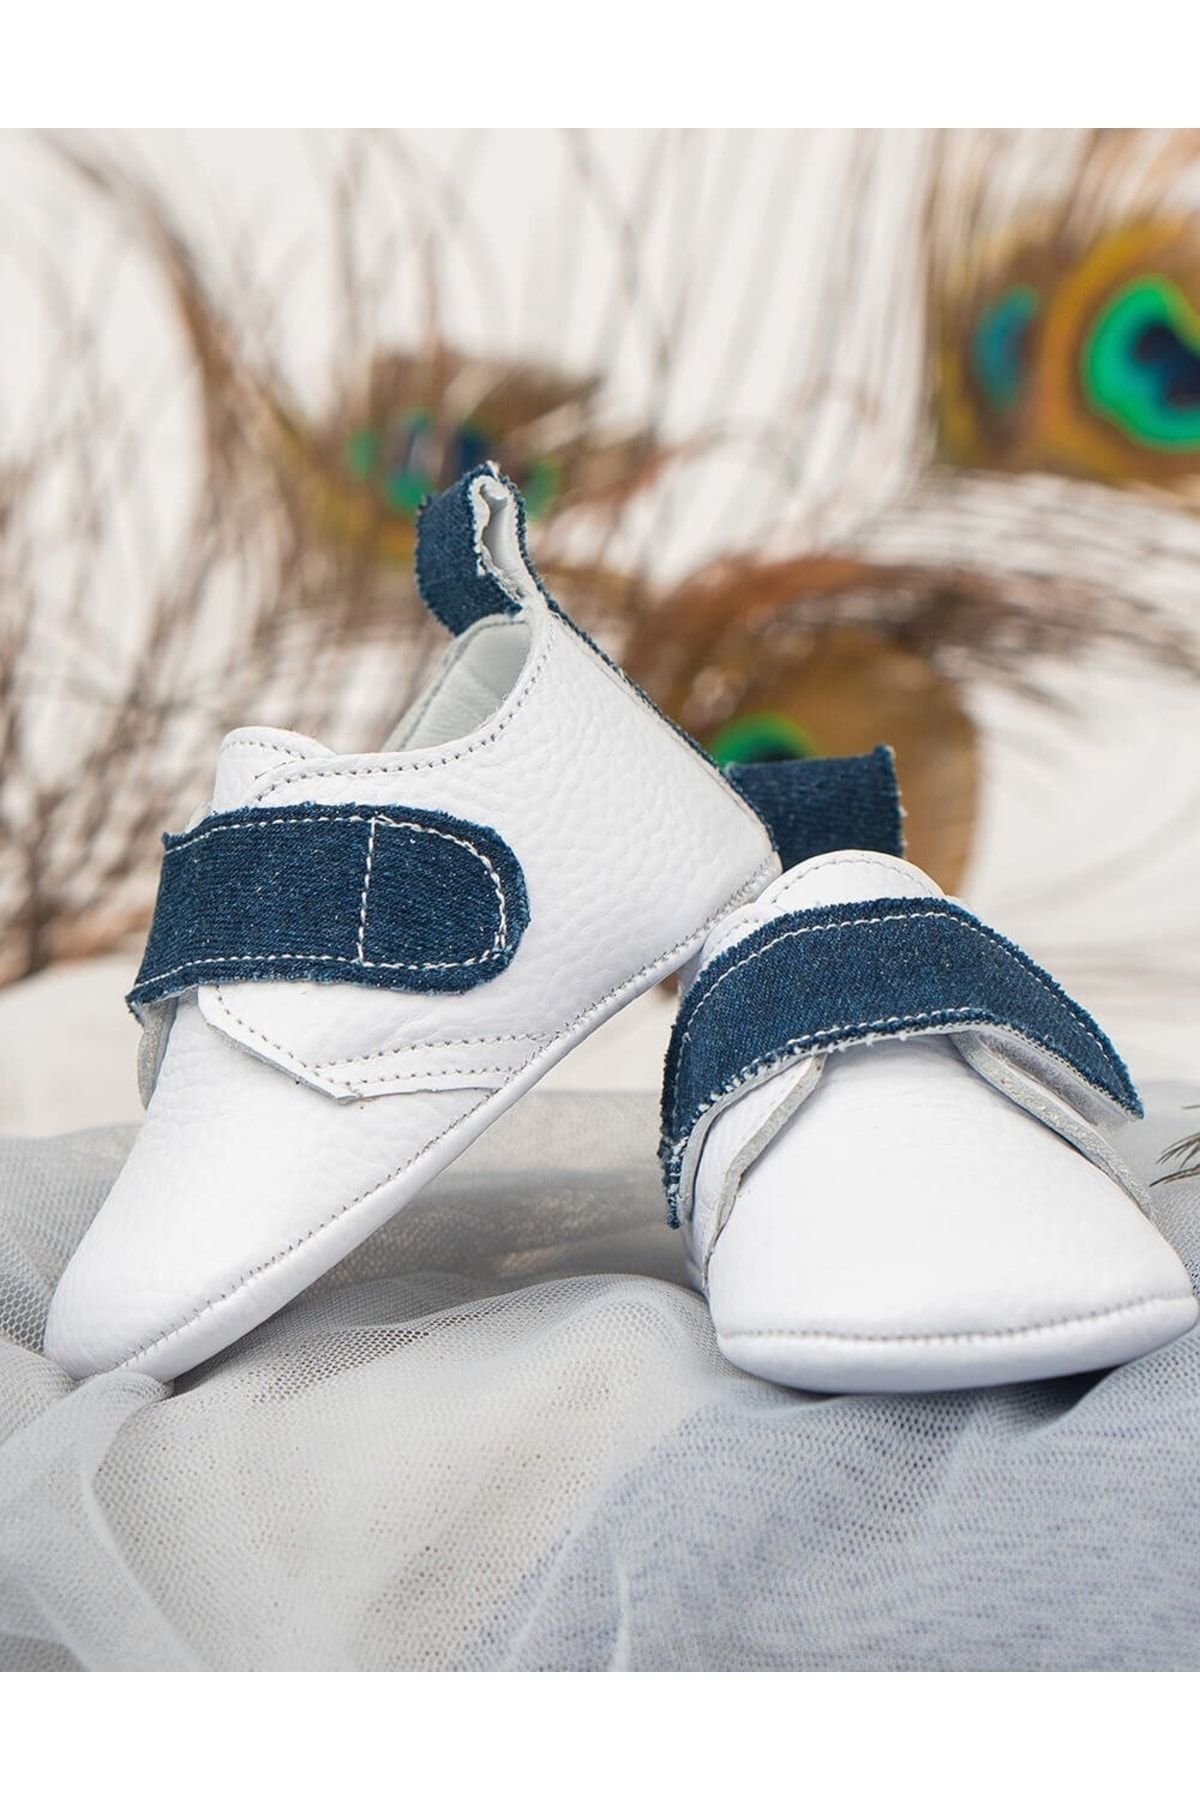 Beybium Jean Beyaz Mat Deri Kot Detaylı Bebek Ayakkabısı